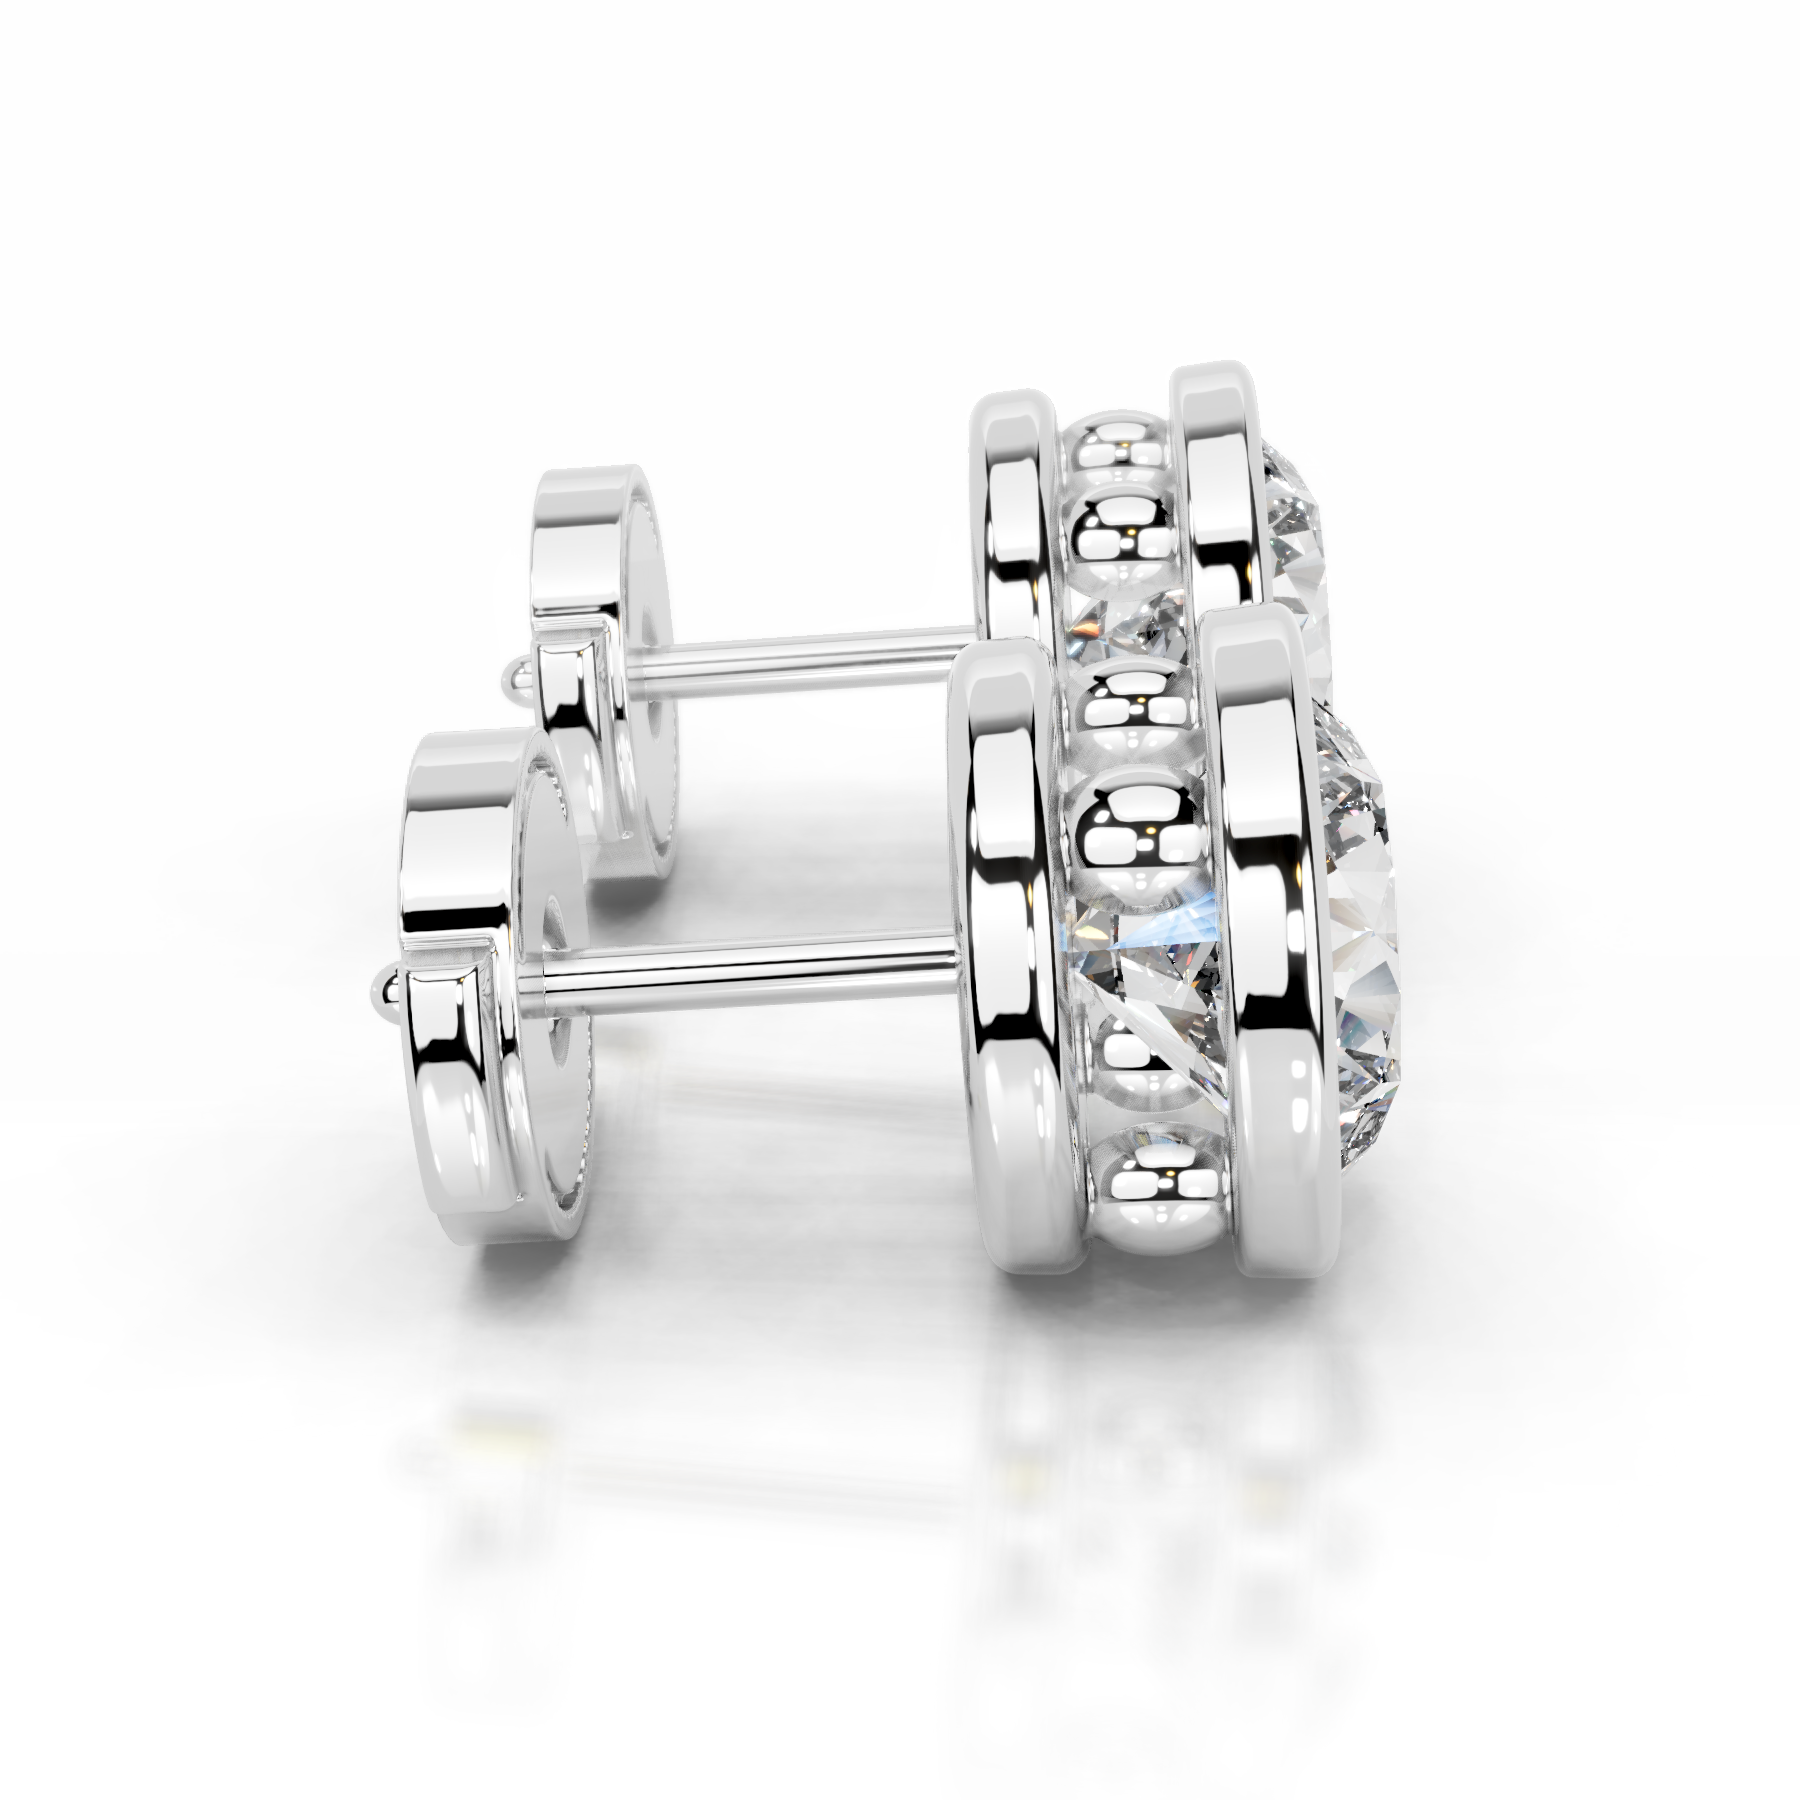 Amber Diamond Earrings   (3 Carat) -14K White Gold